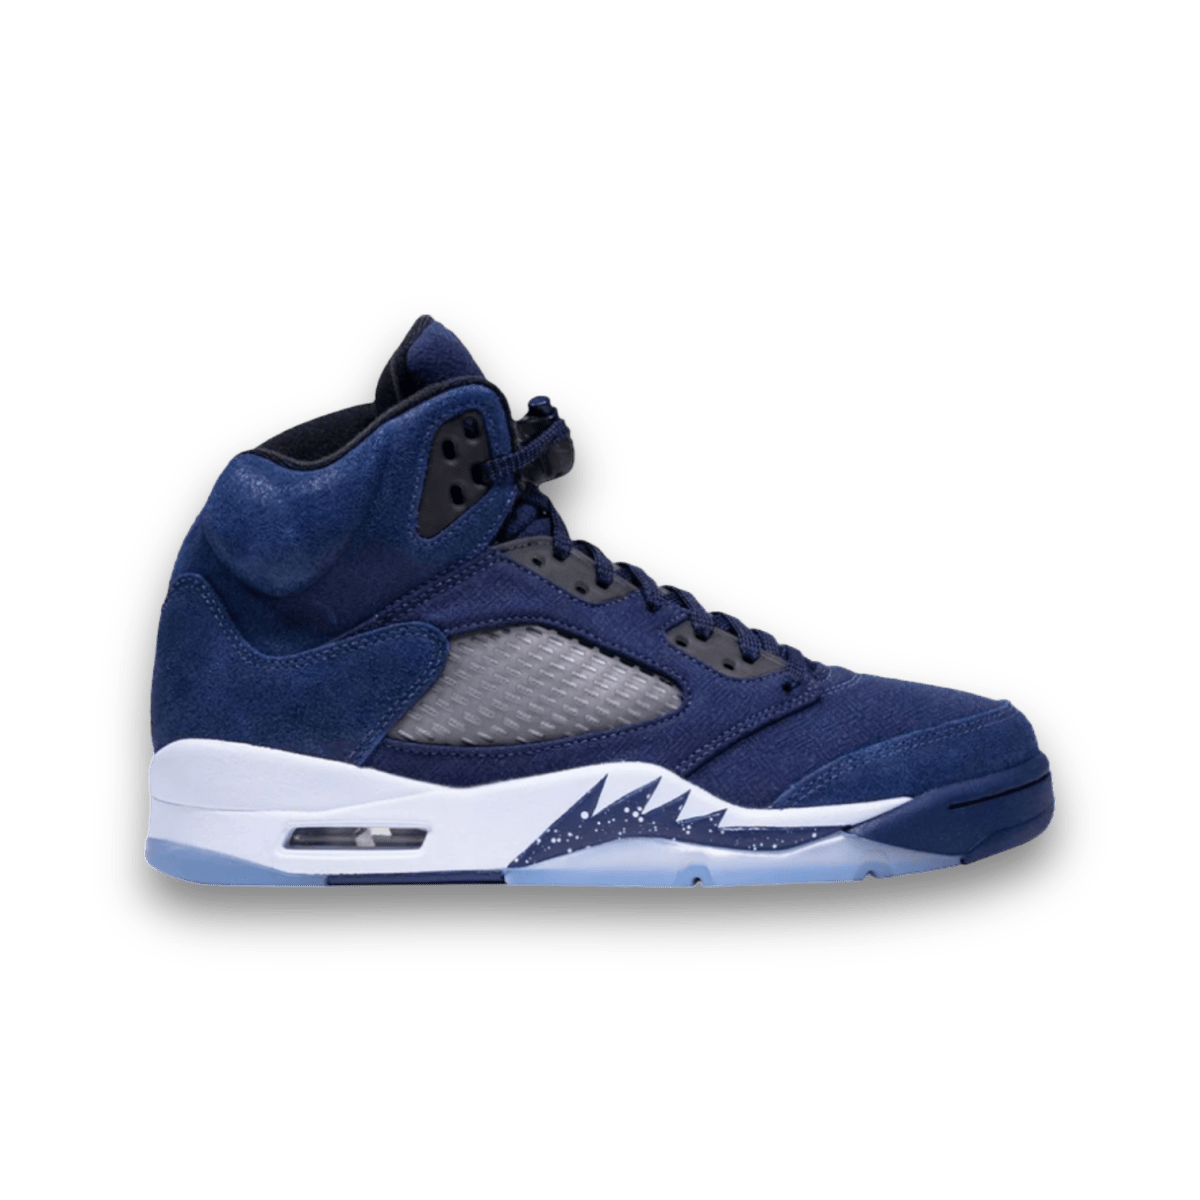 Jordan 5 Retro Midnight Navy - Mid Sneaker - Jawns on Fire Sneakers & Streetwear